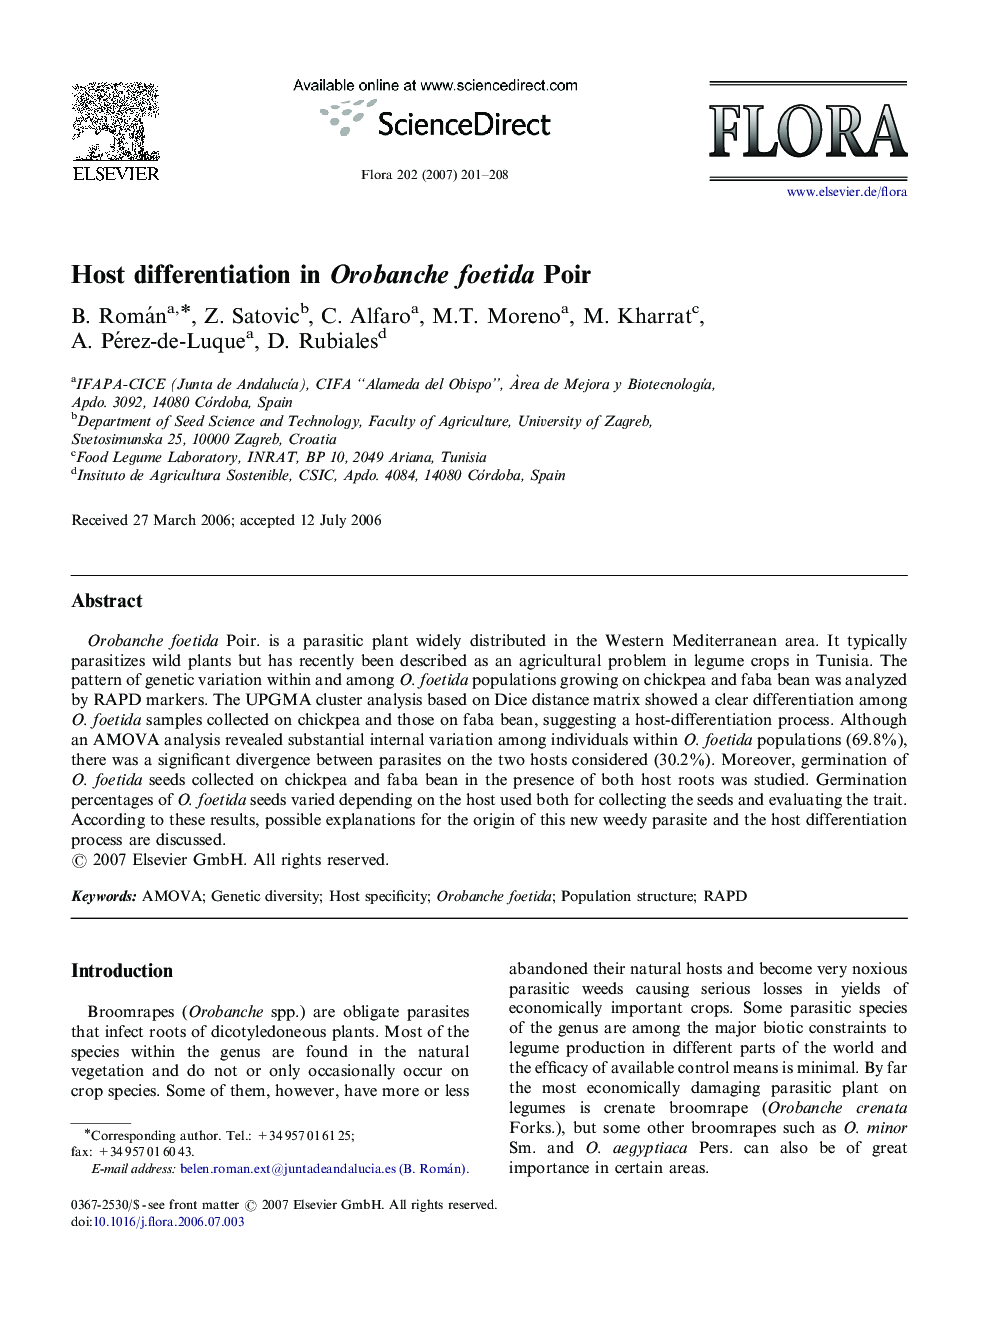 Host differentiation in Orobanche foetida Poir